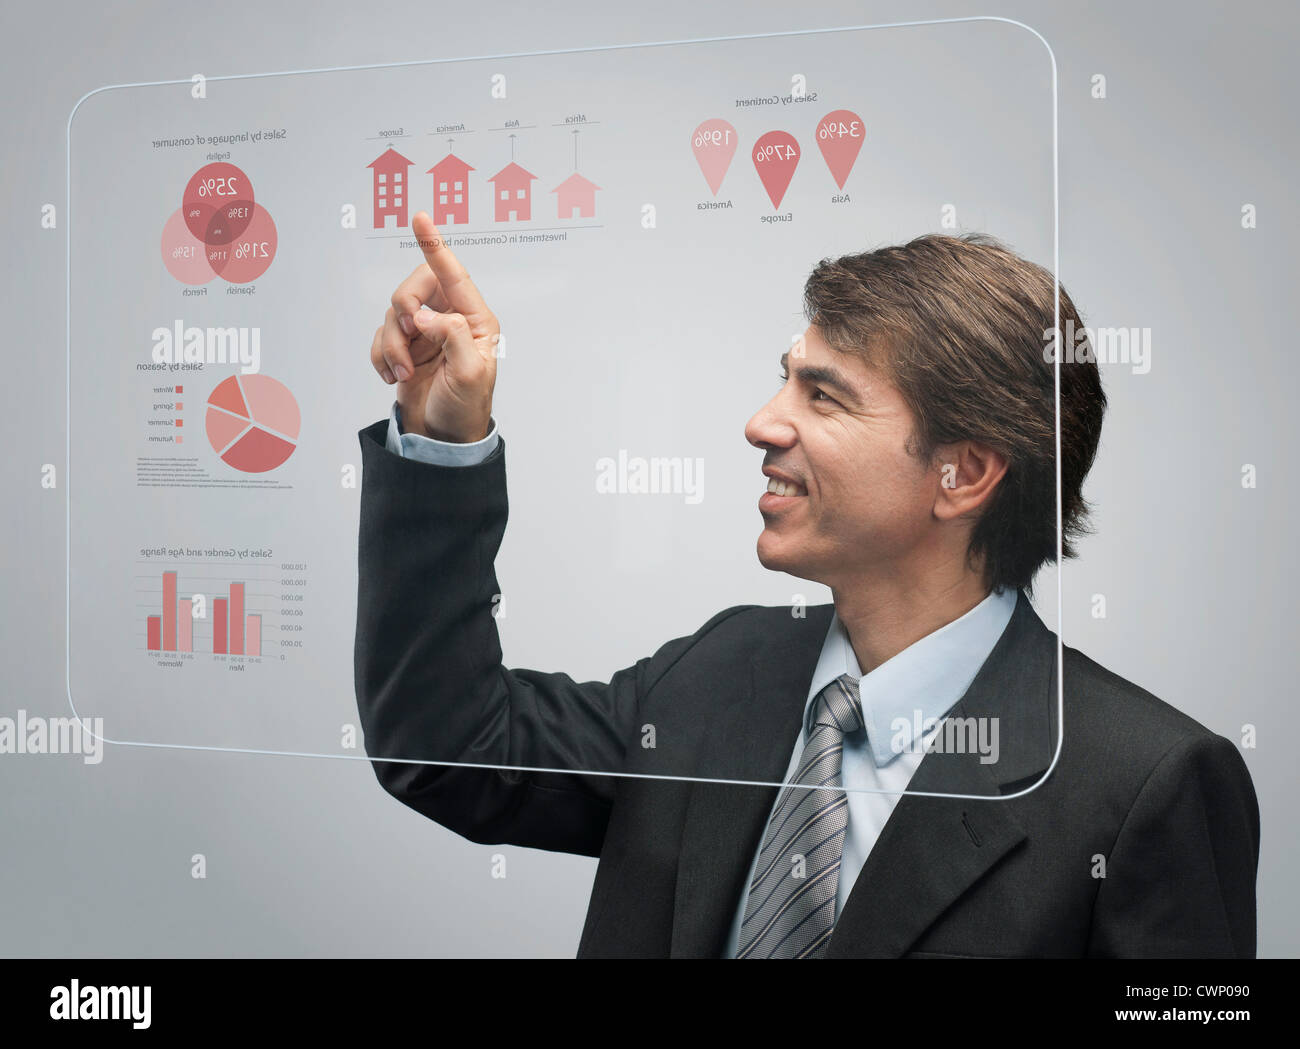 Empresario utilizando una avanzada tecnología de pantalla táctil para ver los datos de ventas Foto de stock